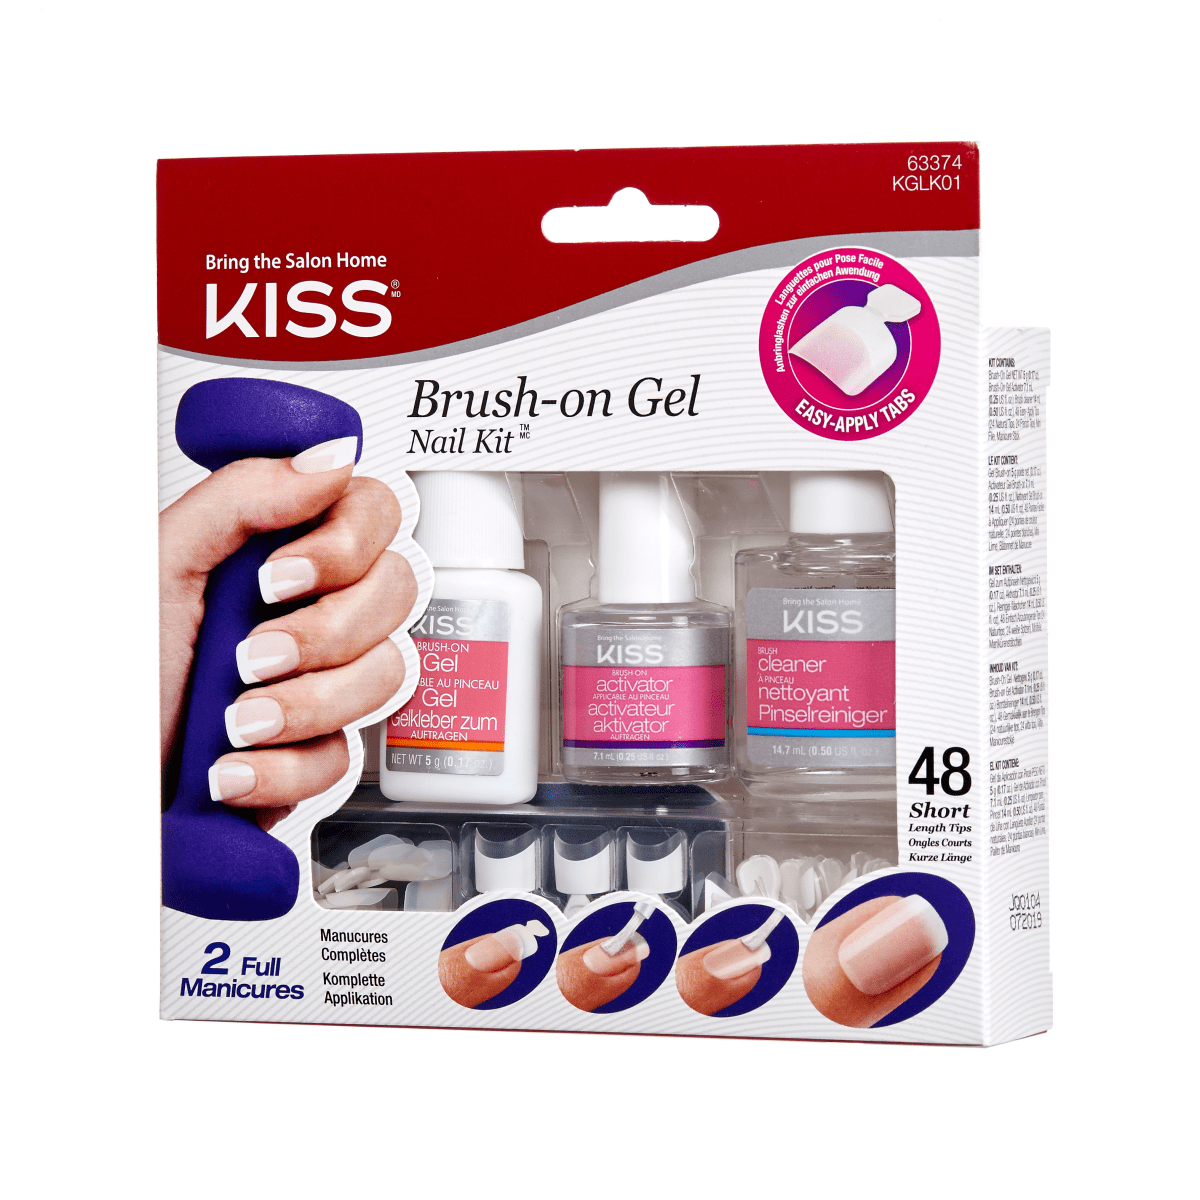 KISS Brush on Gel Nail Kit - White tips